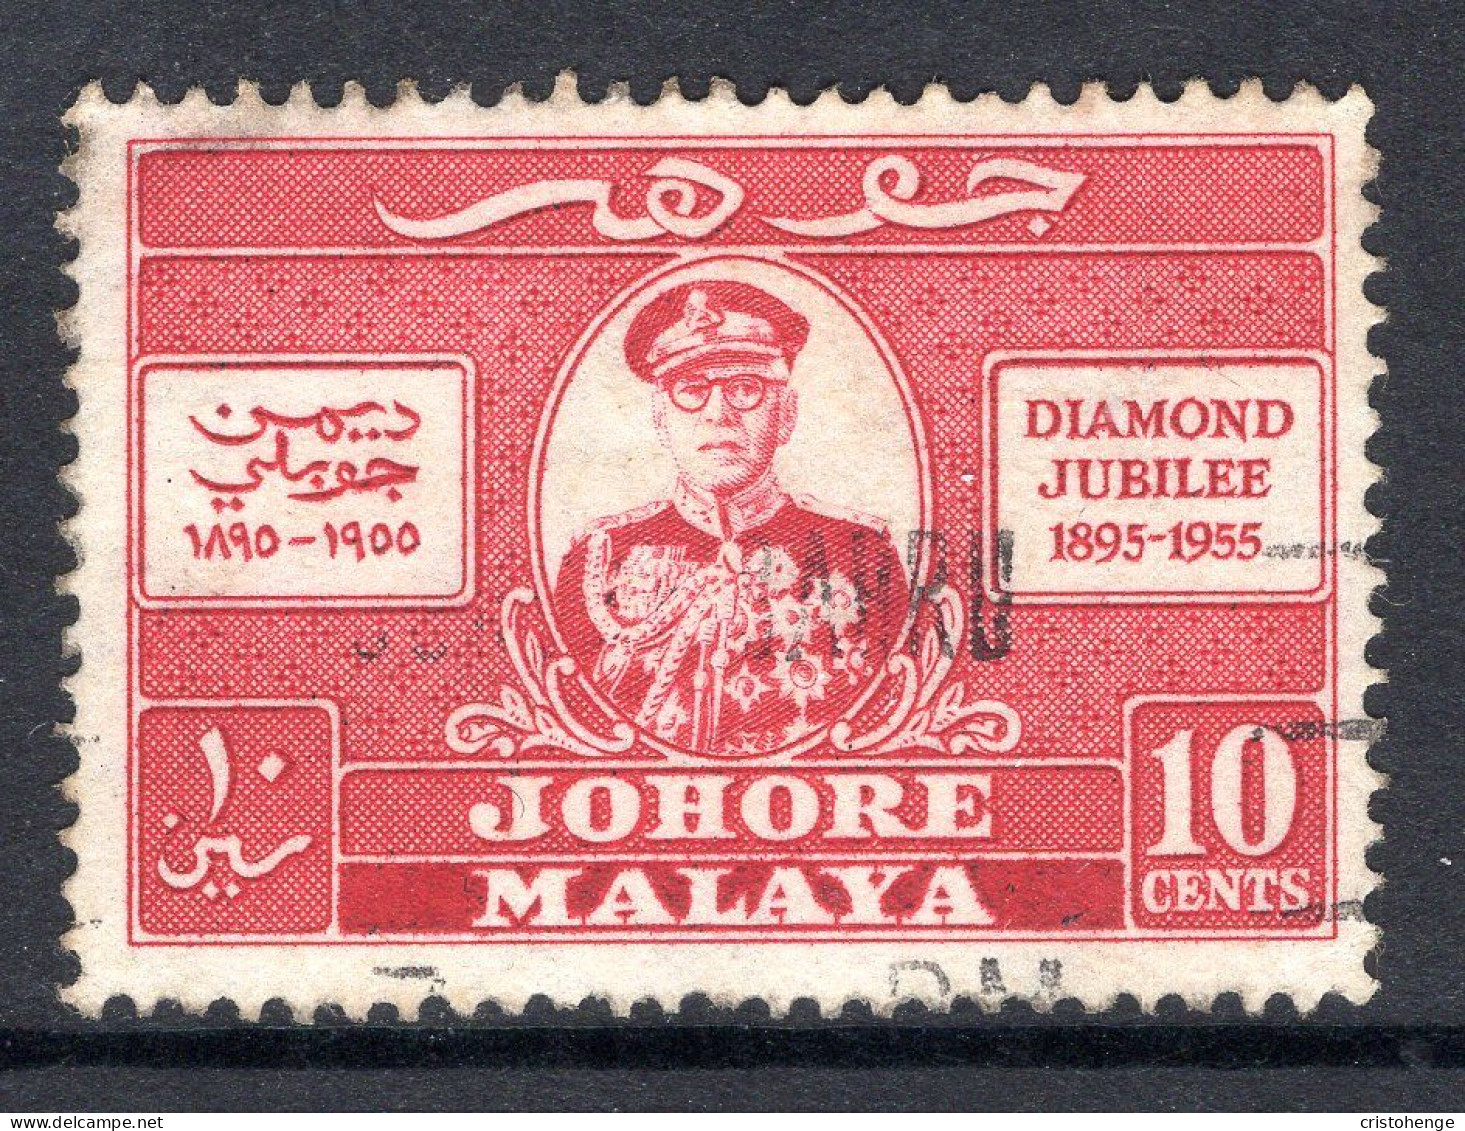 Malaysian States - Johore - 1955 Diamond Jubilee Of Sultan Sir Ibrahim Used (SG 153) - Johore